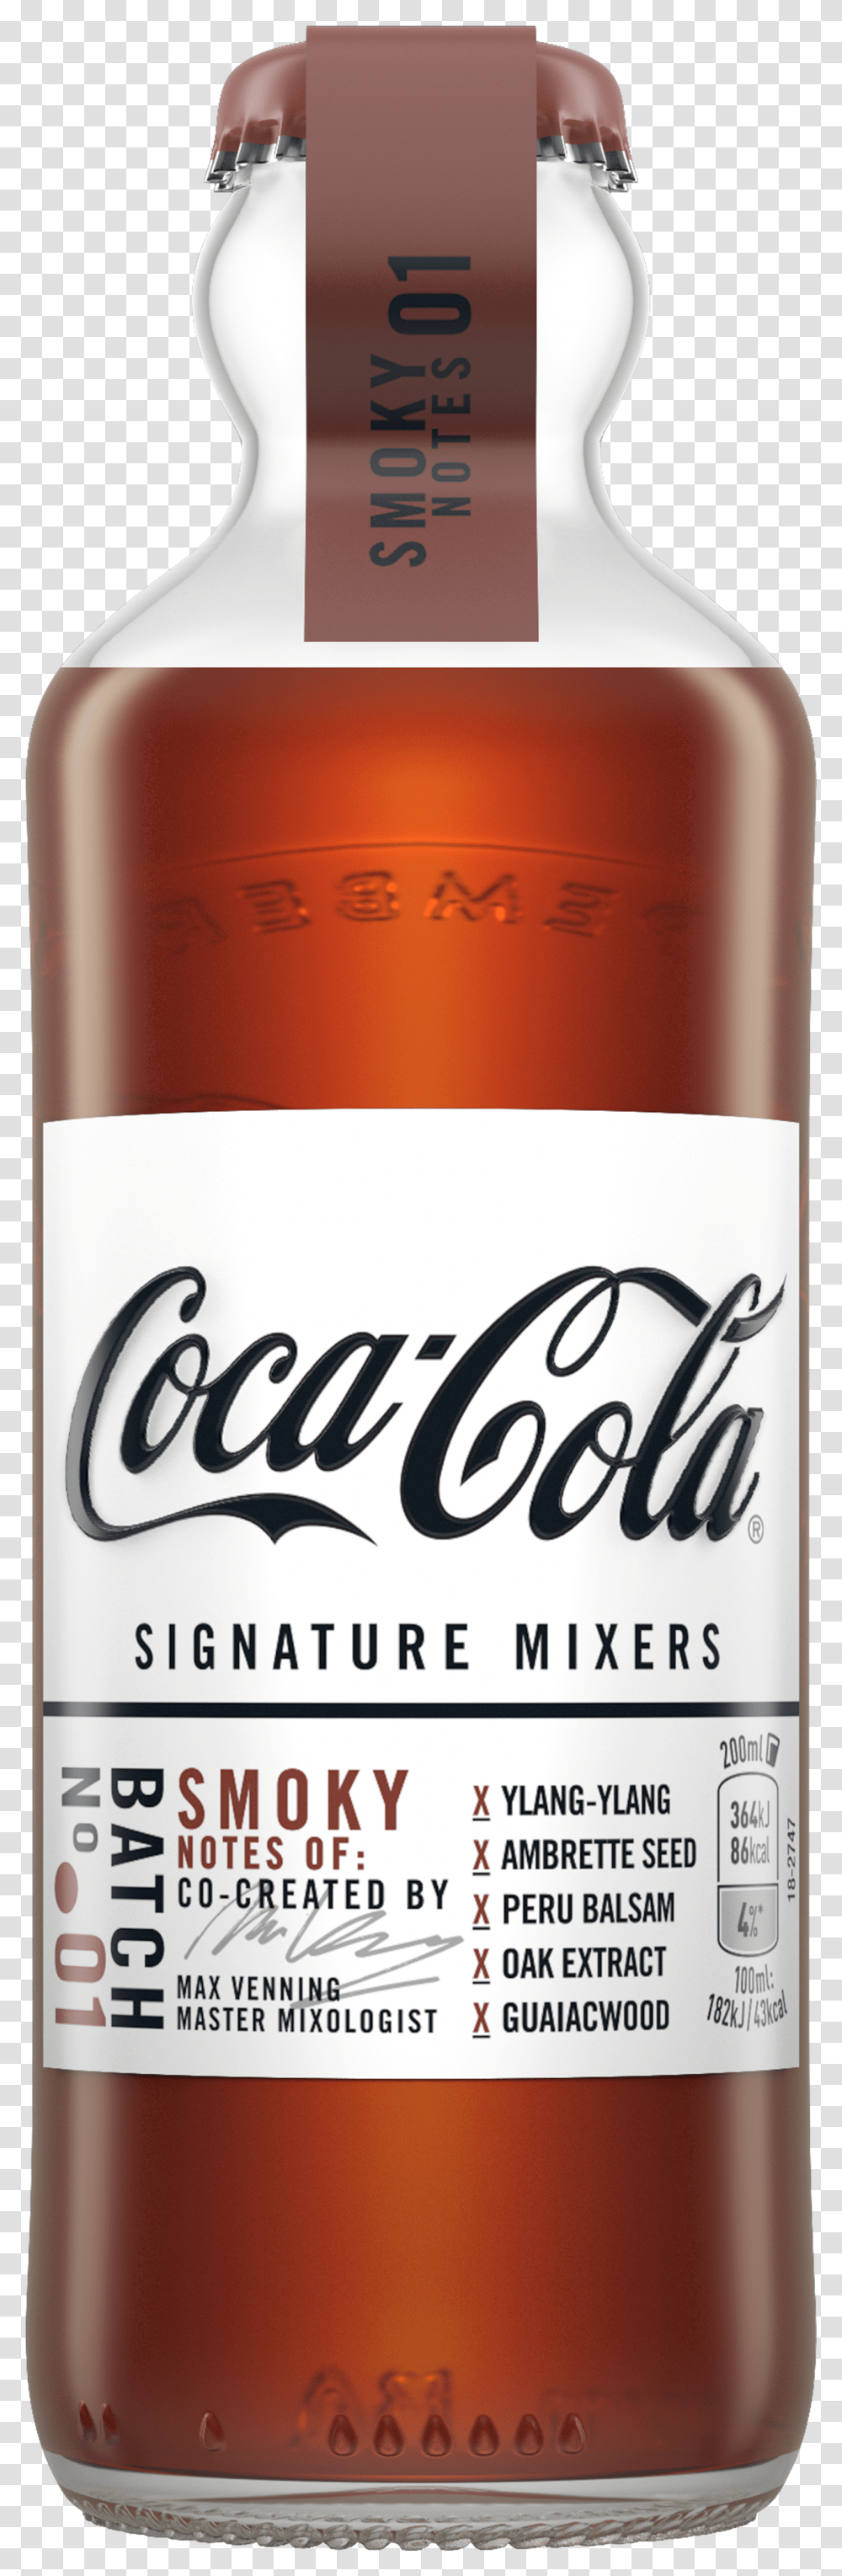 Signature Mixes Coca Cola Transparent Png